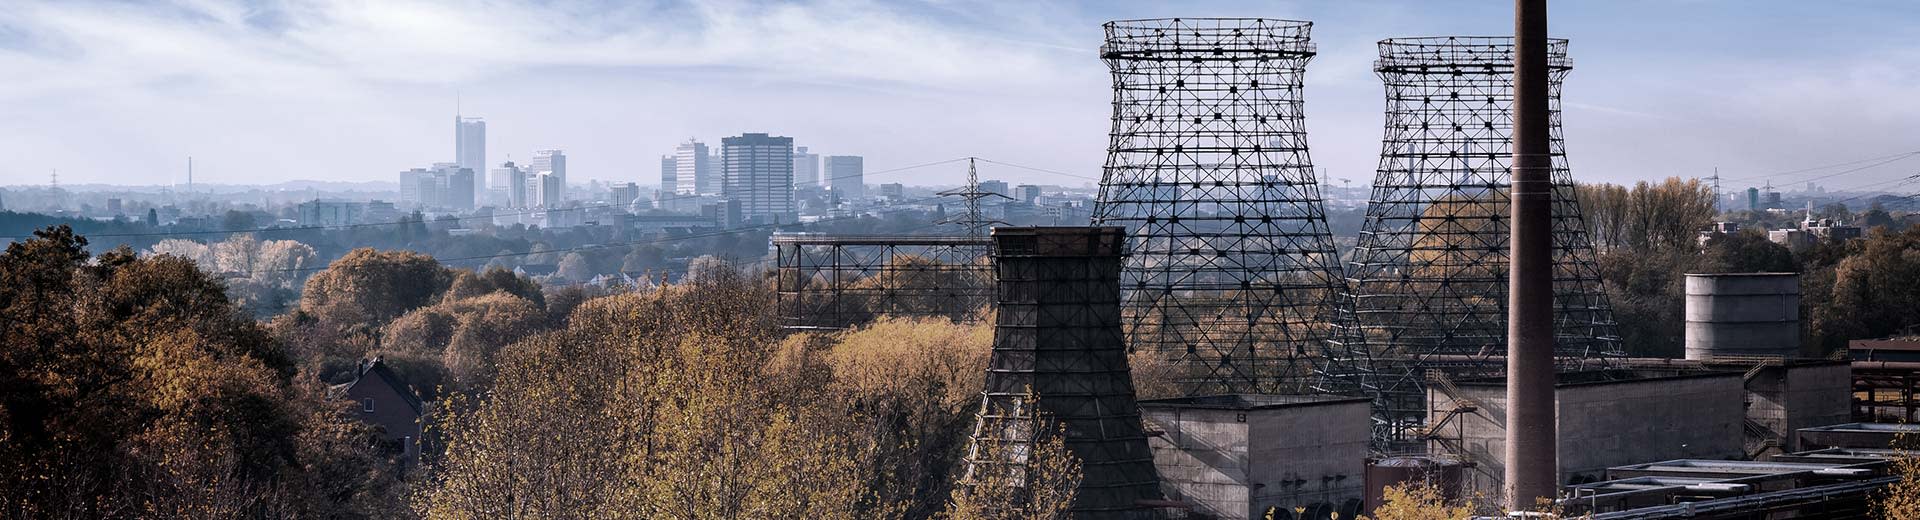 エッセンの産業風景。手前には使われなくなった工場の煙突